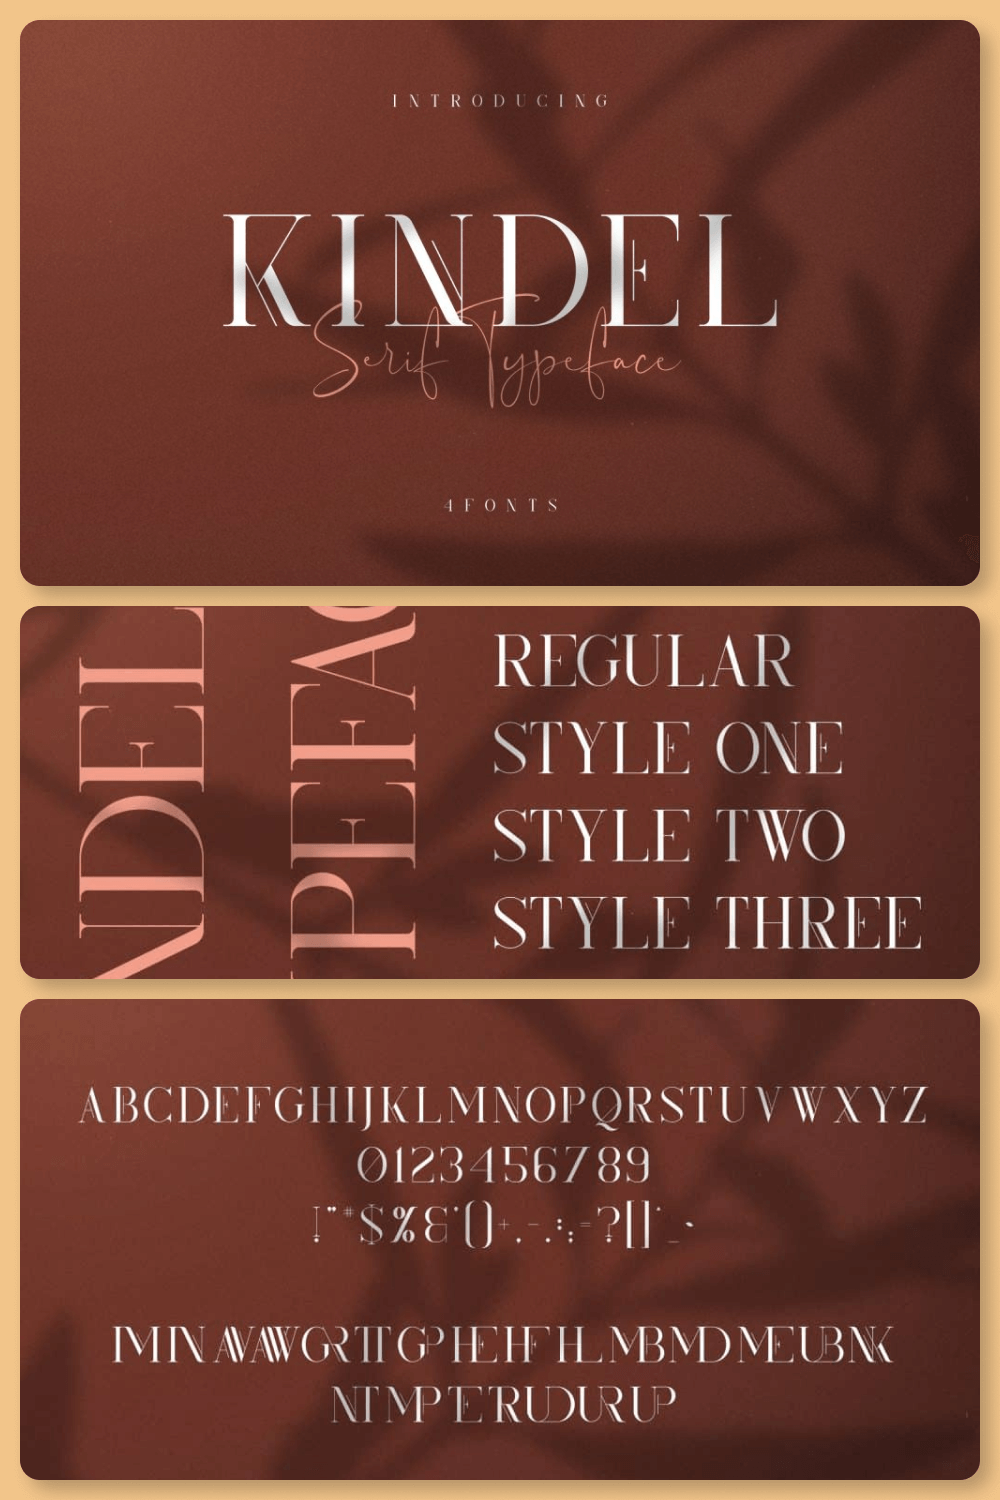 Kindel – Serif Typeface 4 Styles pinterest image.